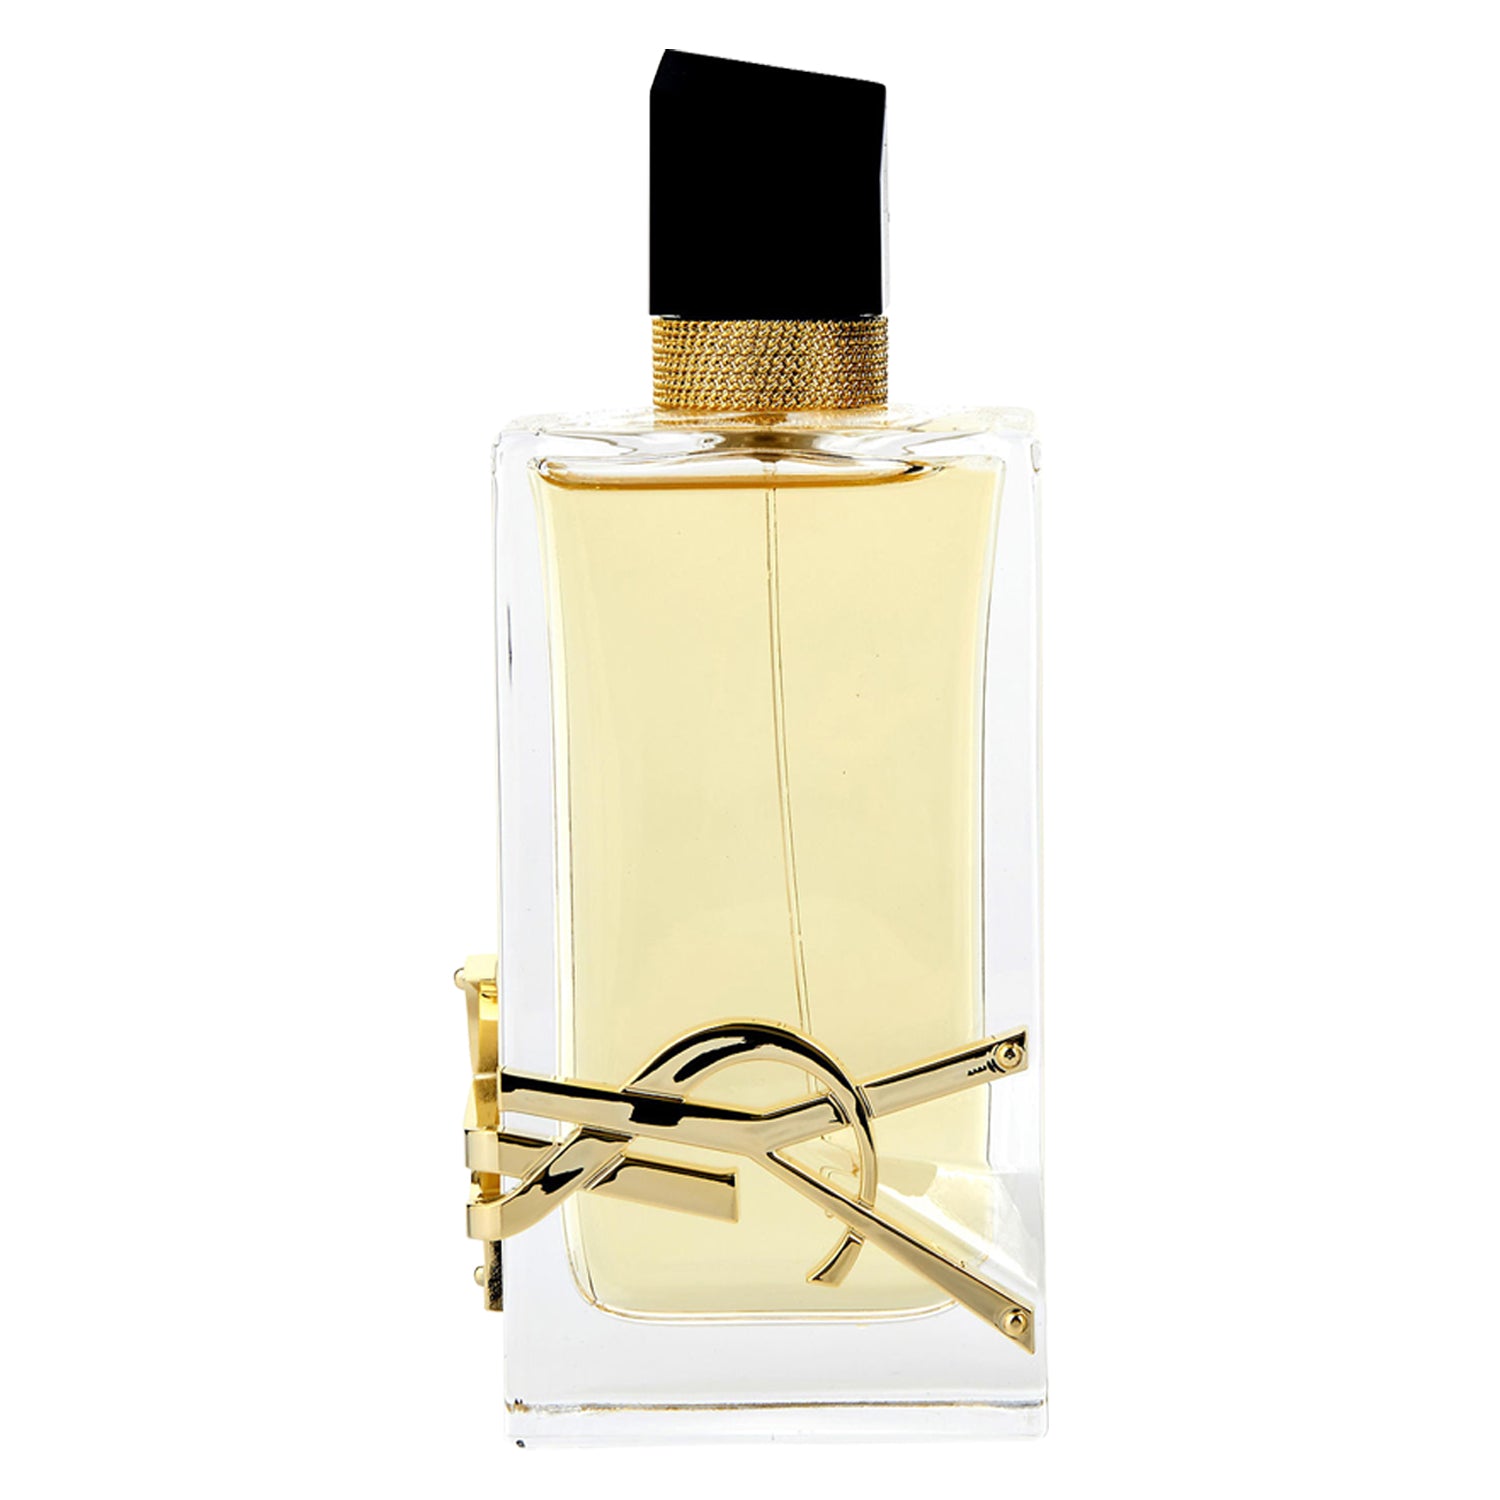 Yves Saint Laurent – Libre eau de parfum review • Scentertainer